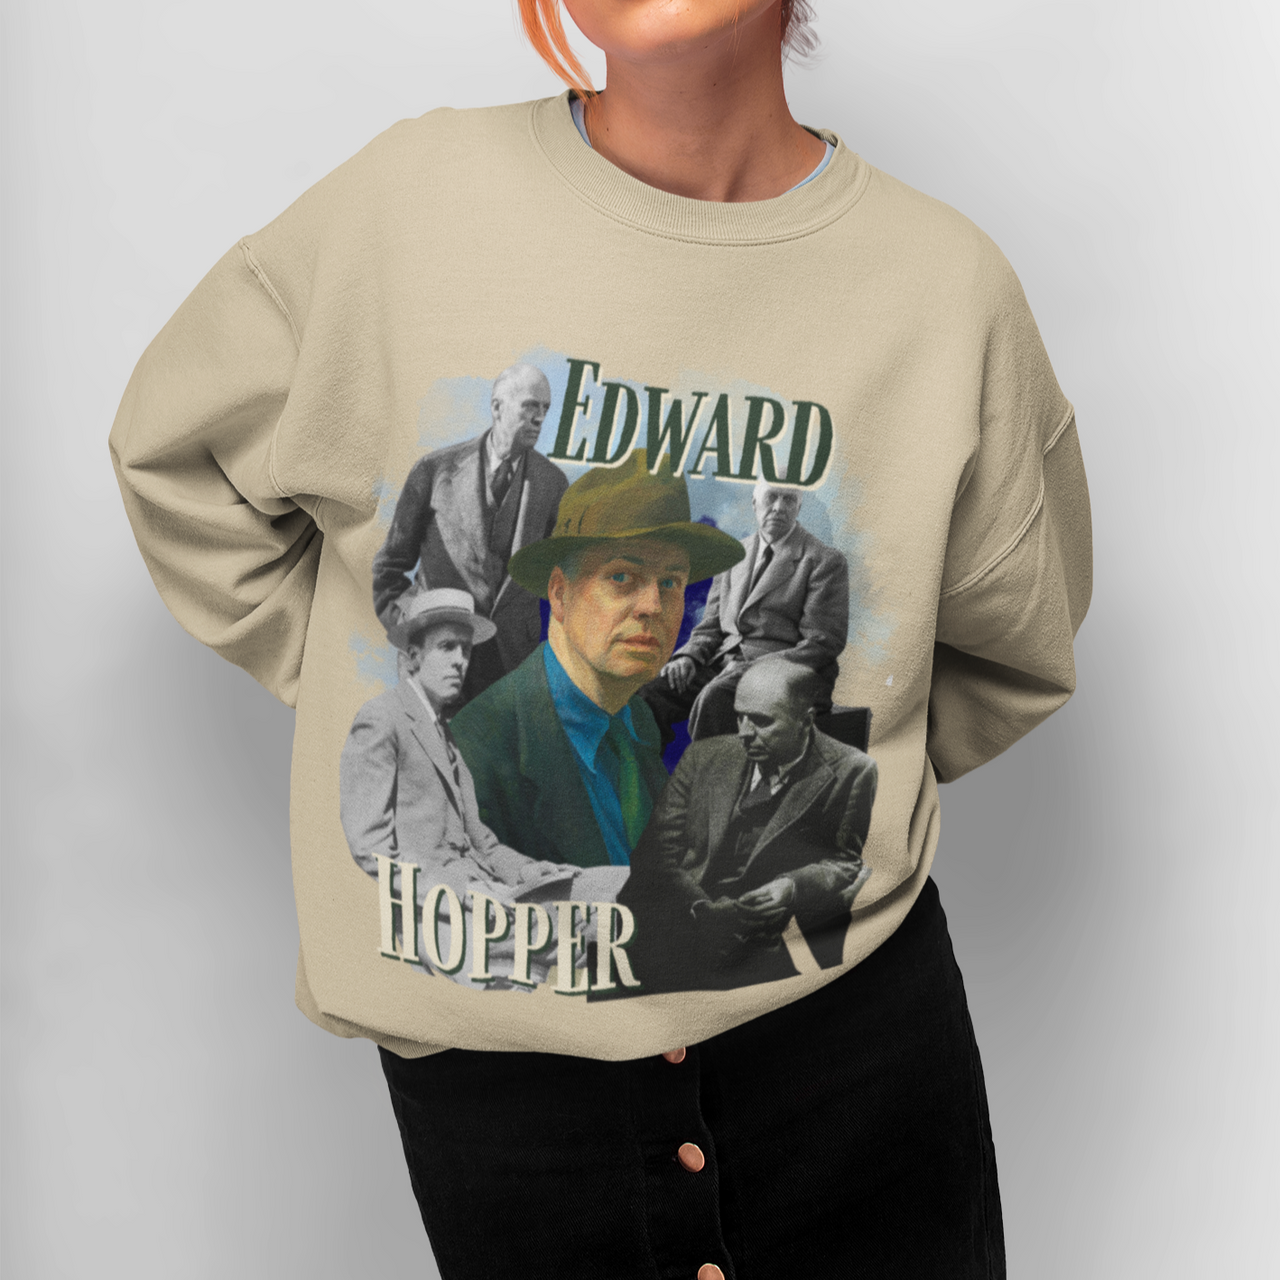 Edward Hopper Sweatshirt, Y2K Style Bootleg Famous American Realist Artist Fan Retro Pullover Crewneck, Artist Gift